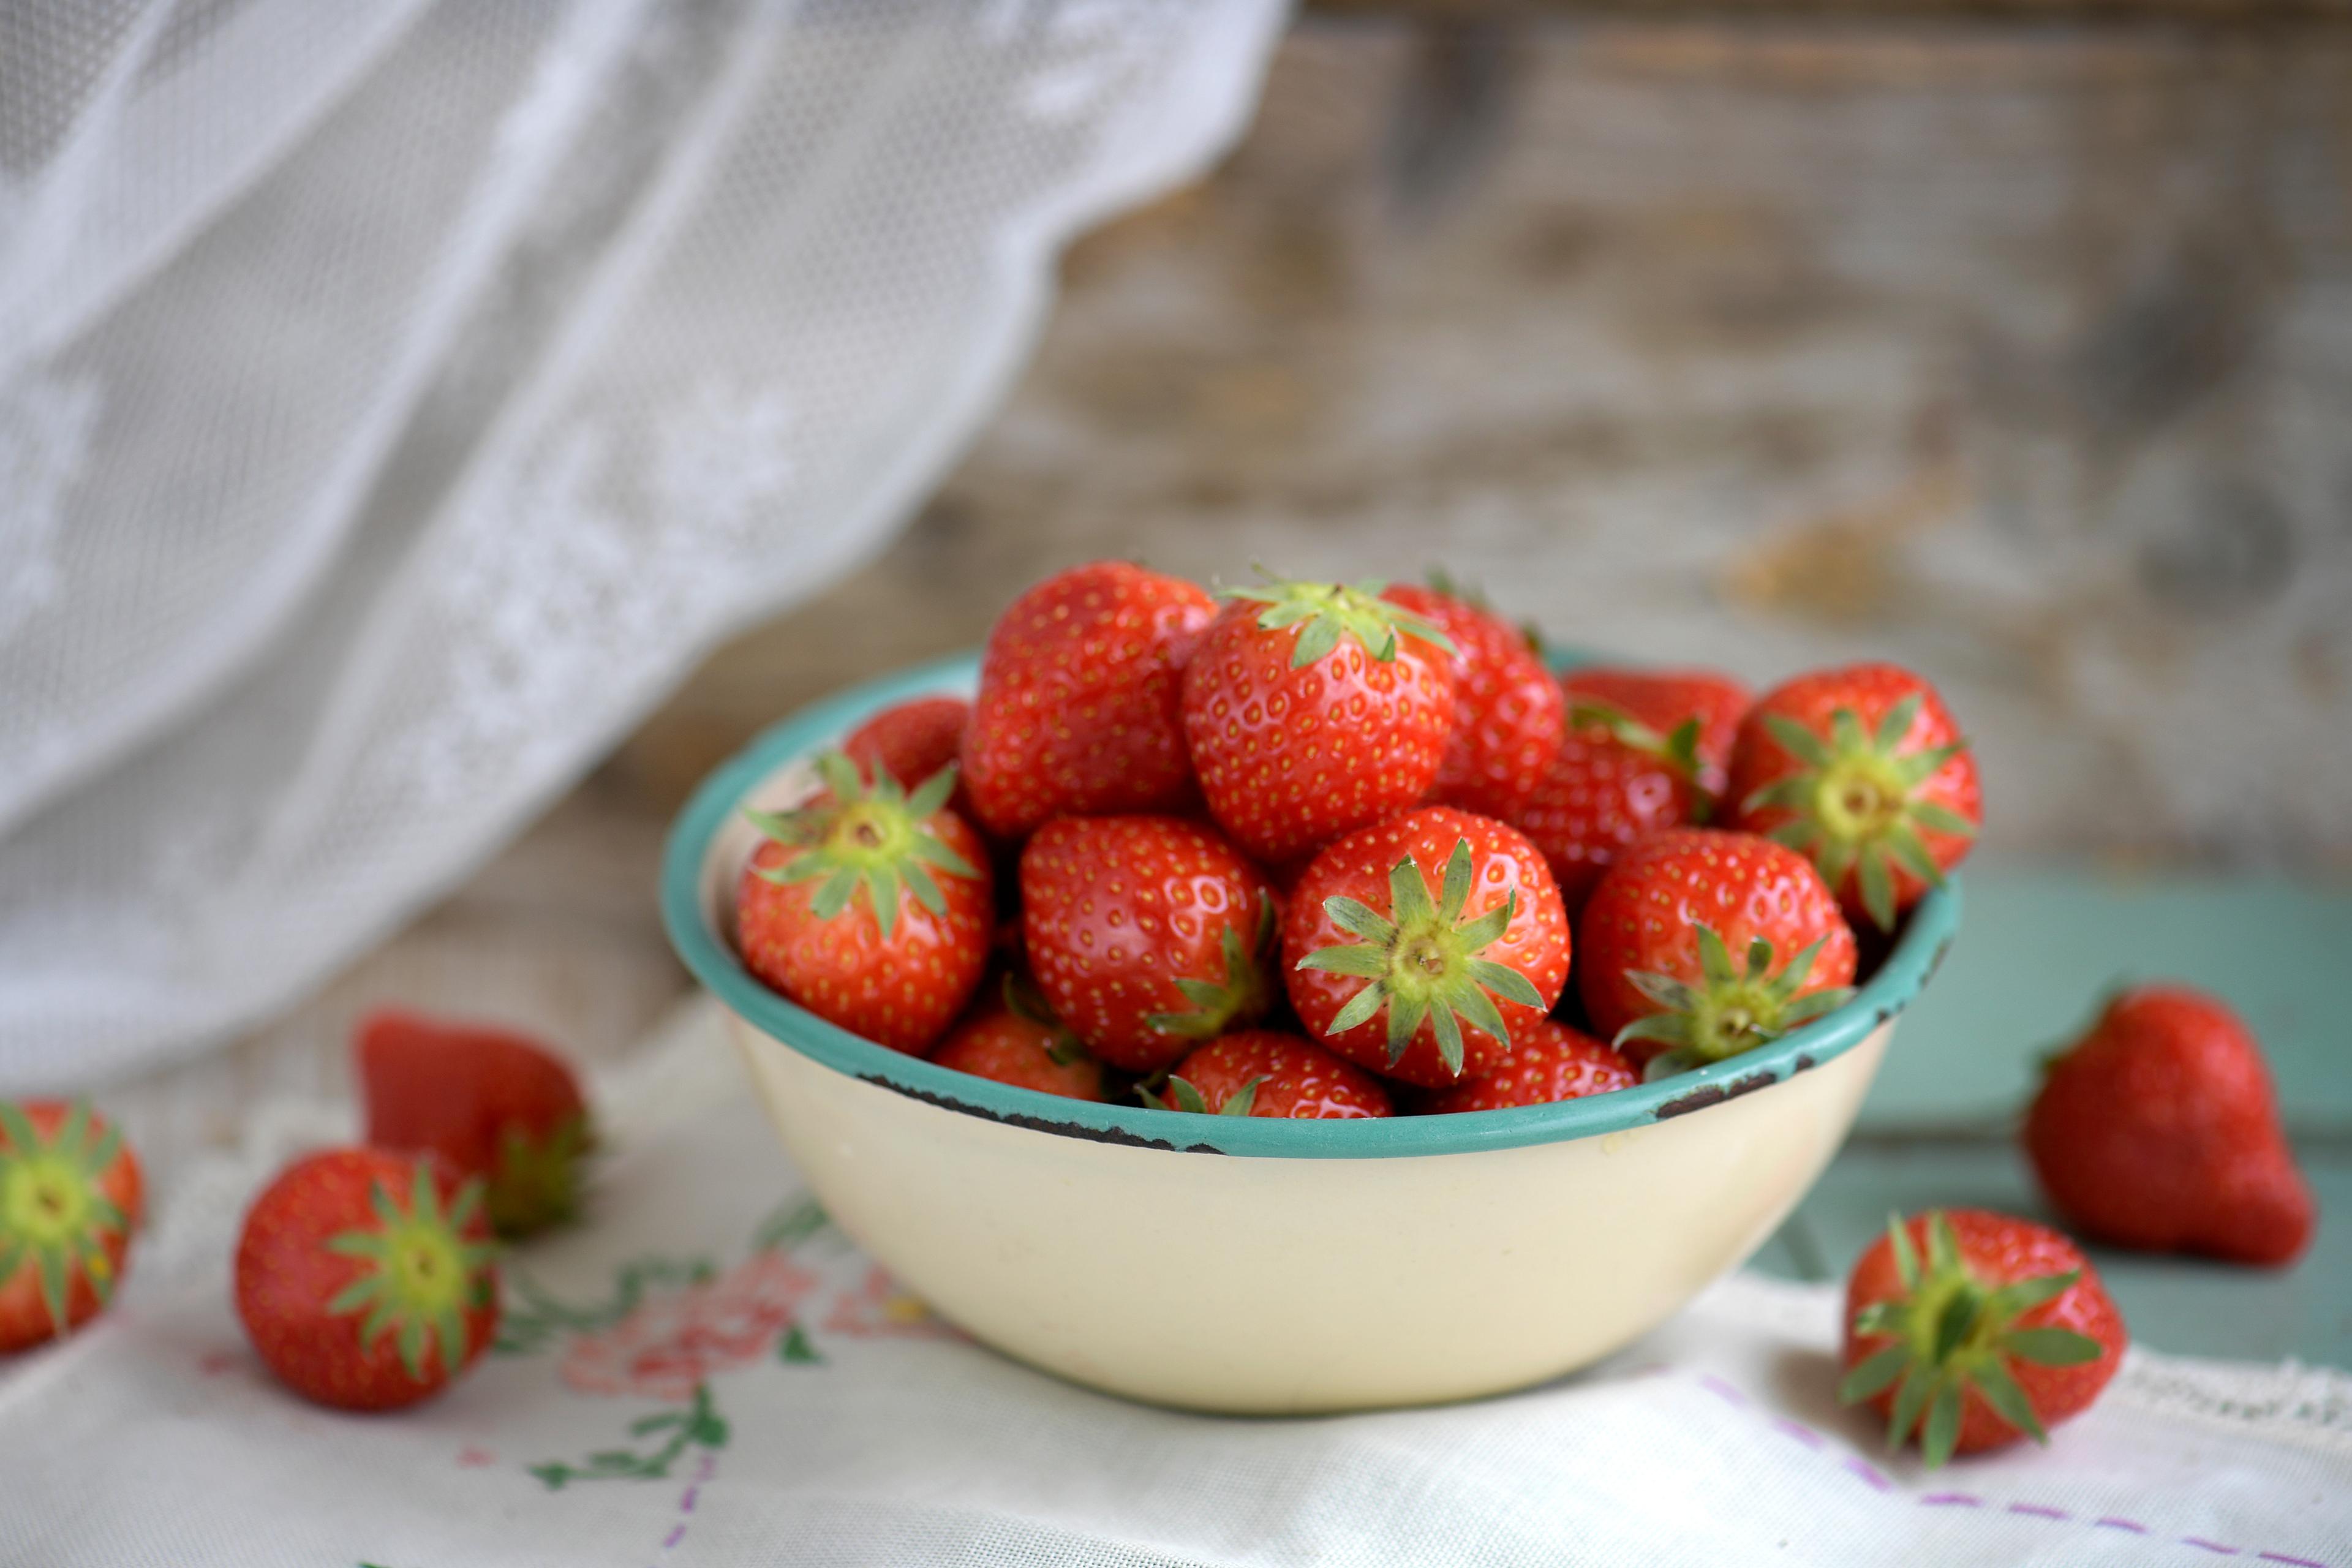 Polisen misstänker att jordgubbsförsäljning kan finansiera organiserad brottslighet. Arkivbild. Foto: Janerik Henriksson/TT